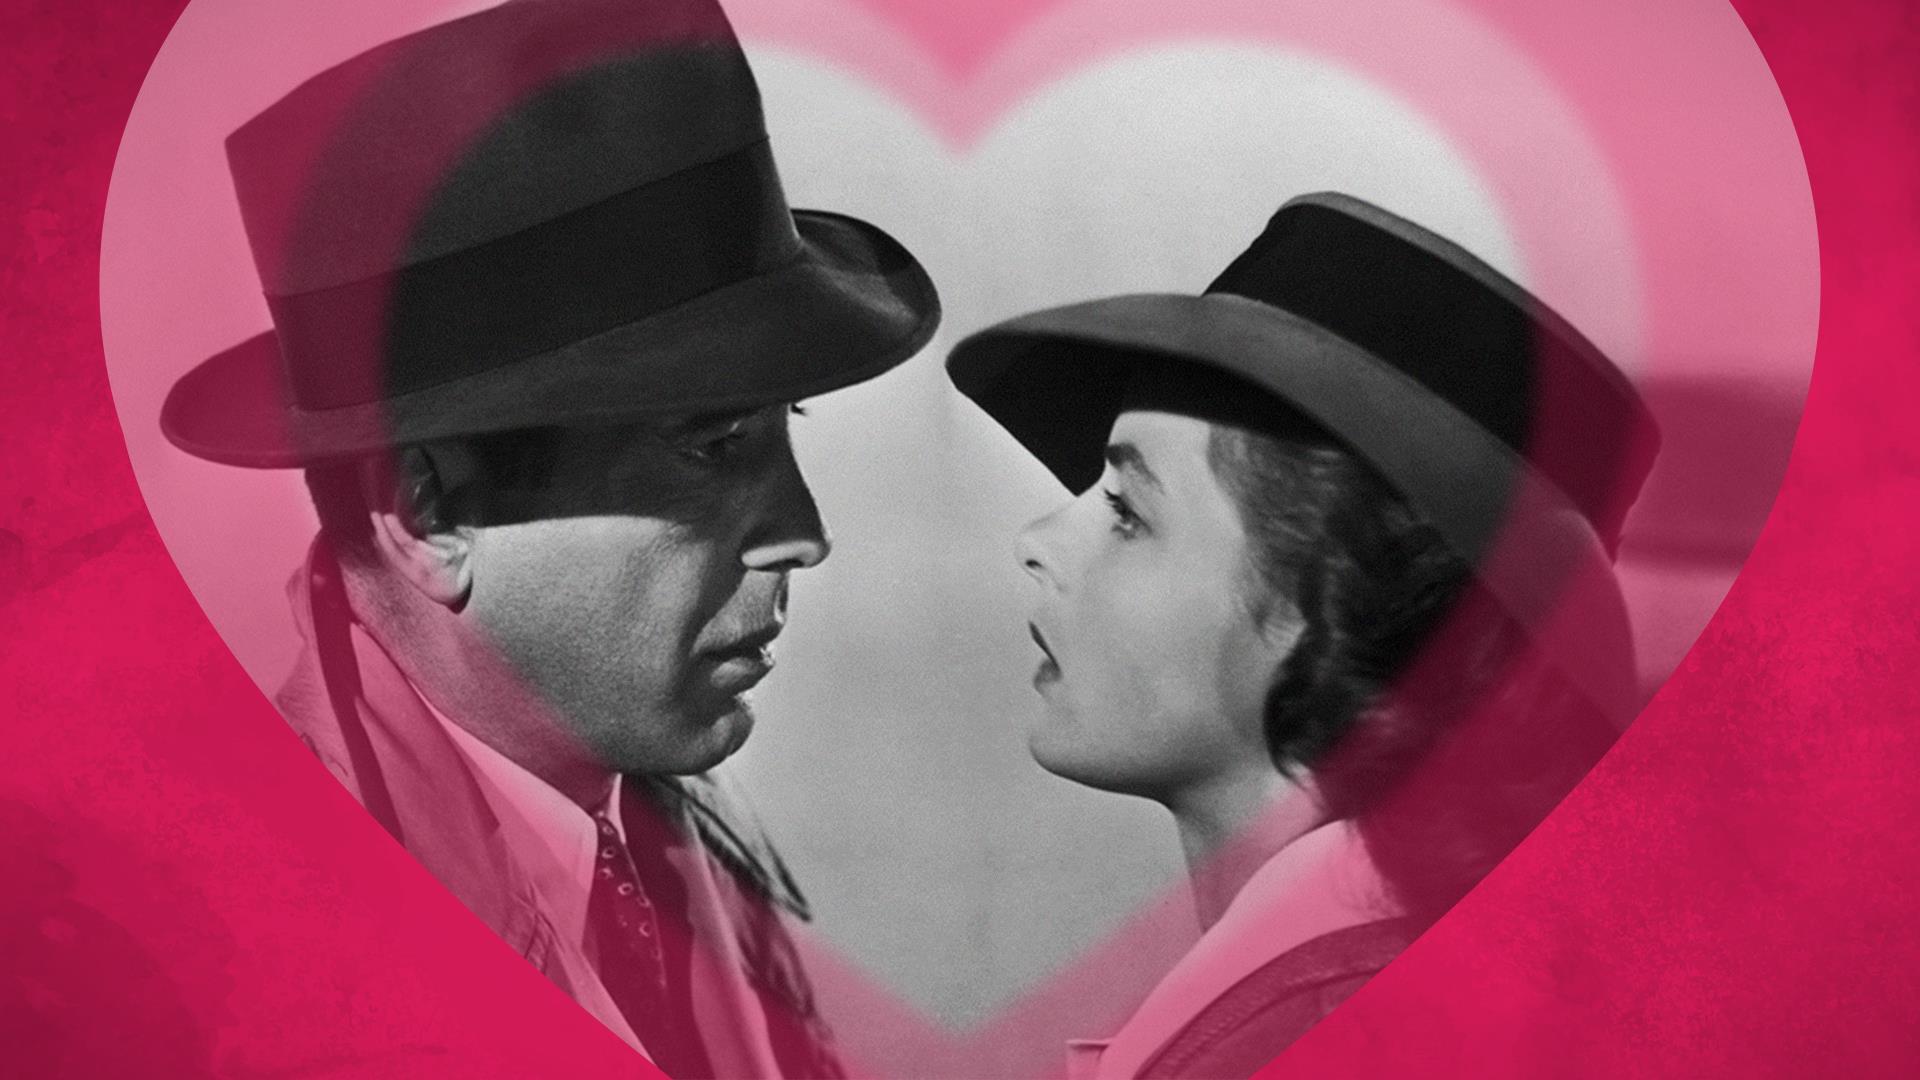 Saint-Valentin : Casablanca est-il la plus grande histoire d’amour au cinéma?
Saint-Valentin : Casablanca est-il la plus grande histoire d’amour au cinéma?